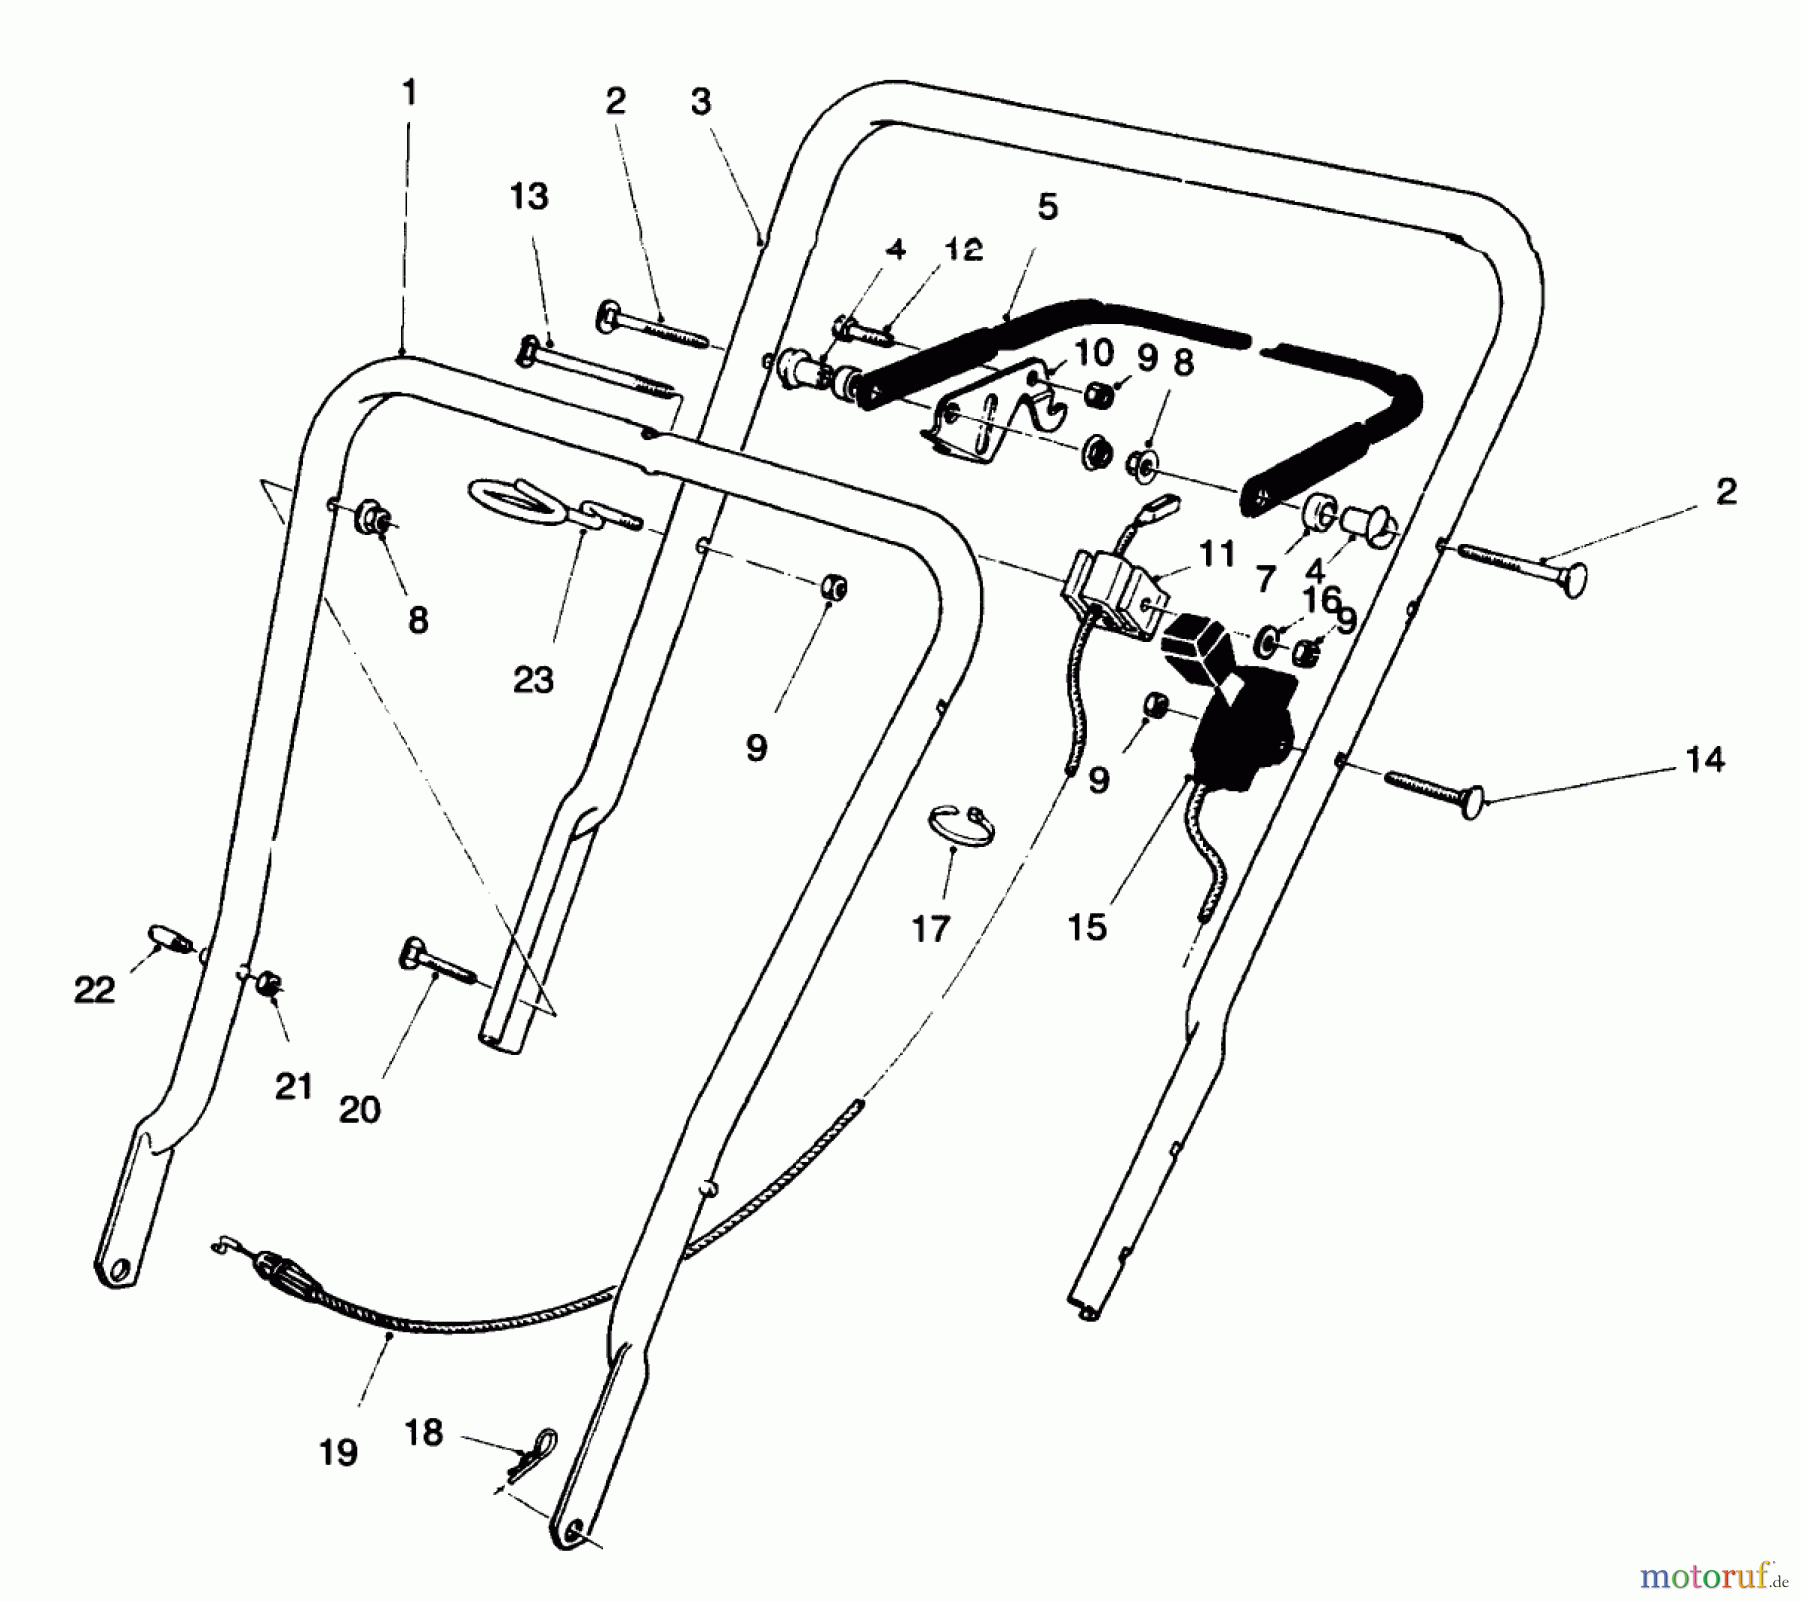  Toro Neu Mowers, Walk-Behind Seite 1 16400 - Toro Lawnmower, 1995 (5900001-5999999) HANDLE ASSEMBLY